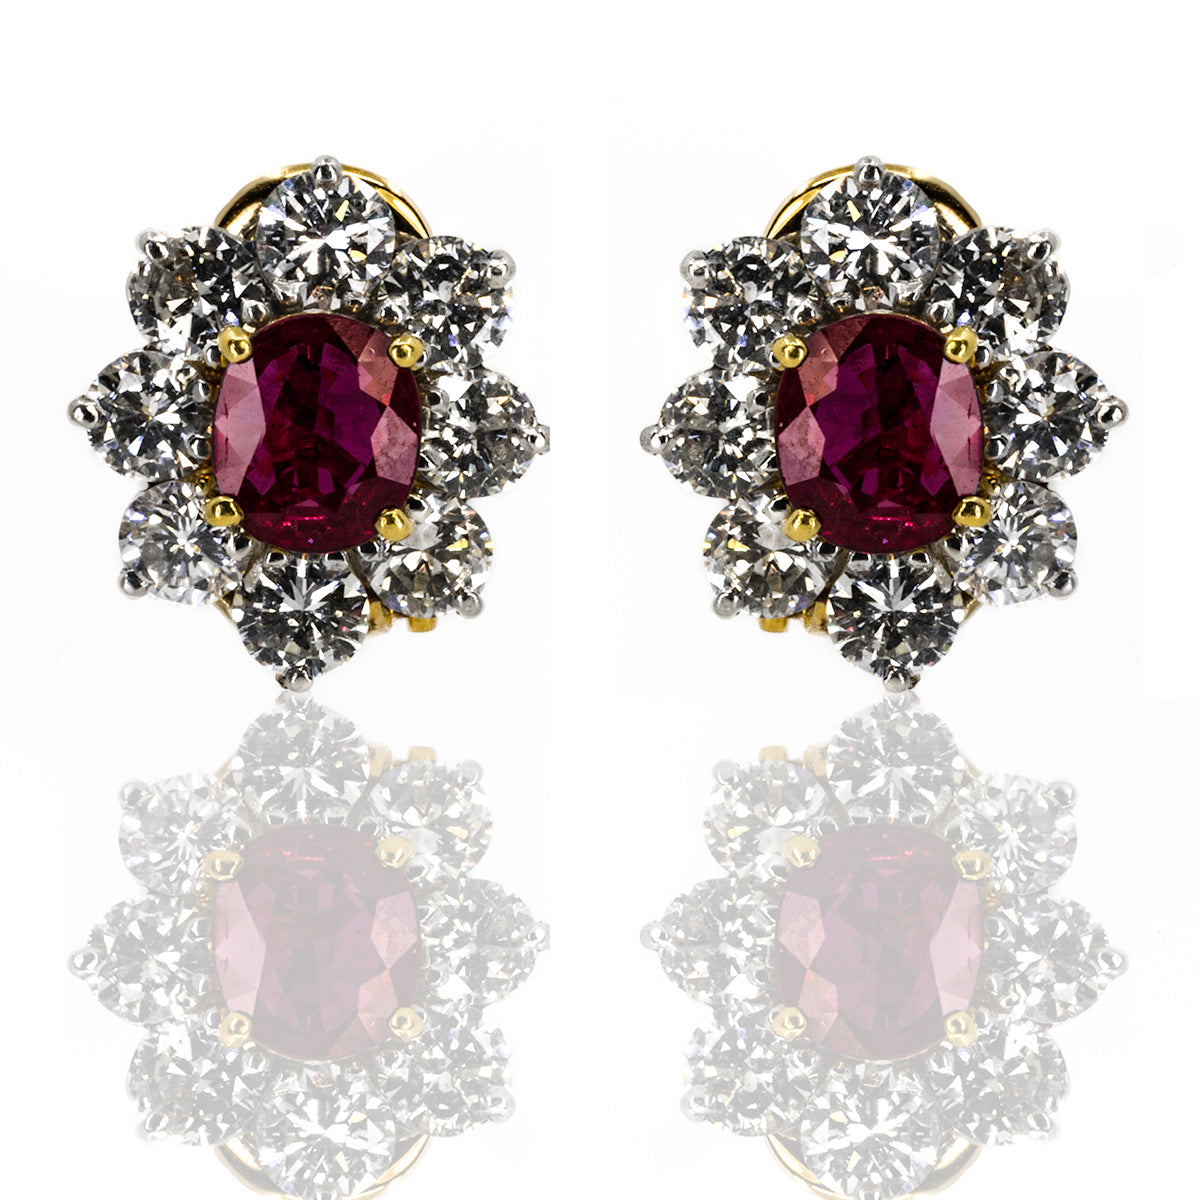 Platinuum & 18k Ruby Earrings